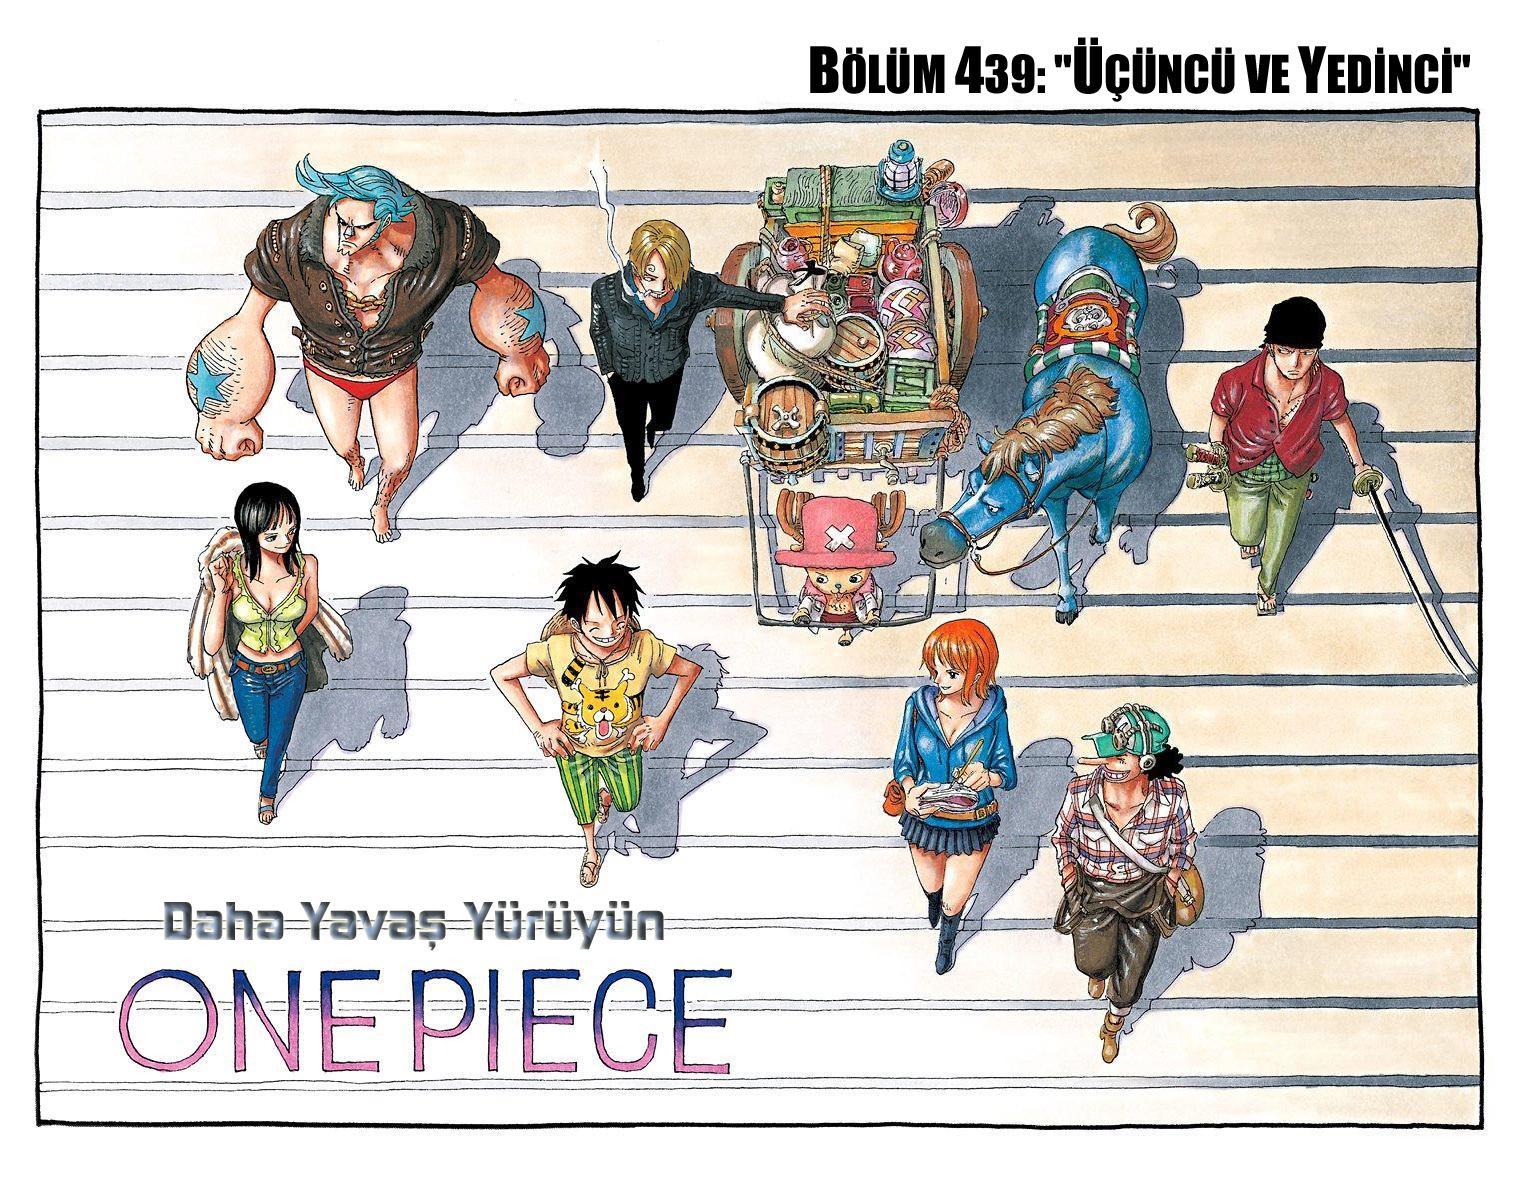 One Piece [Renkli] mangasının 0439 bölümünün 2. sayfasını okuyorsunuz.